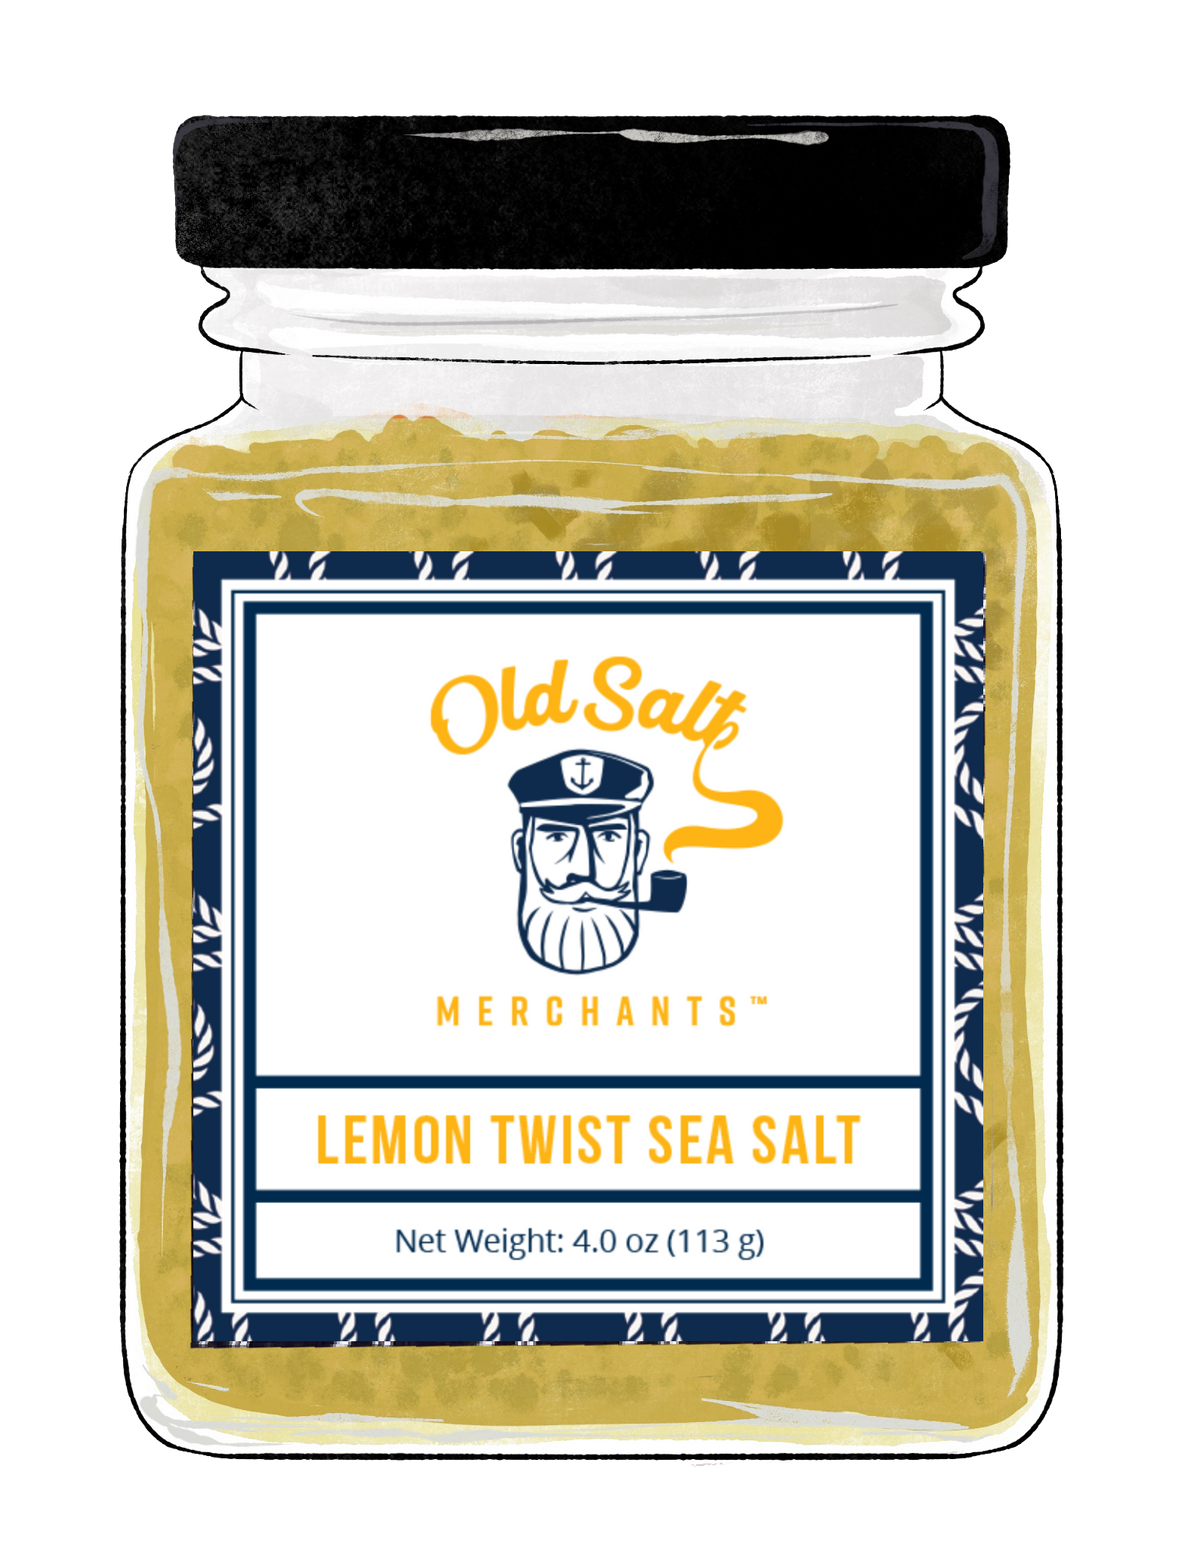 Lemon Twist Sea Salt exclusive at Tastermonial